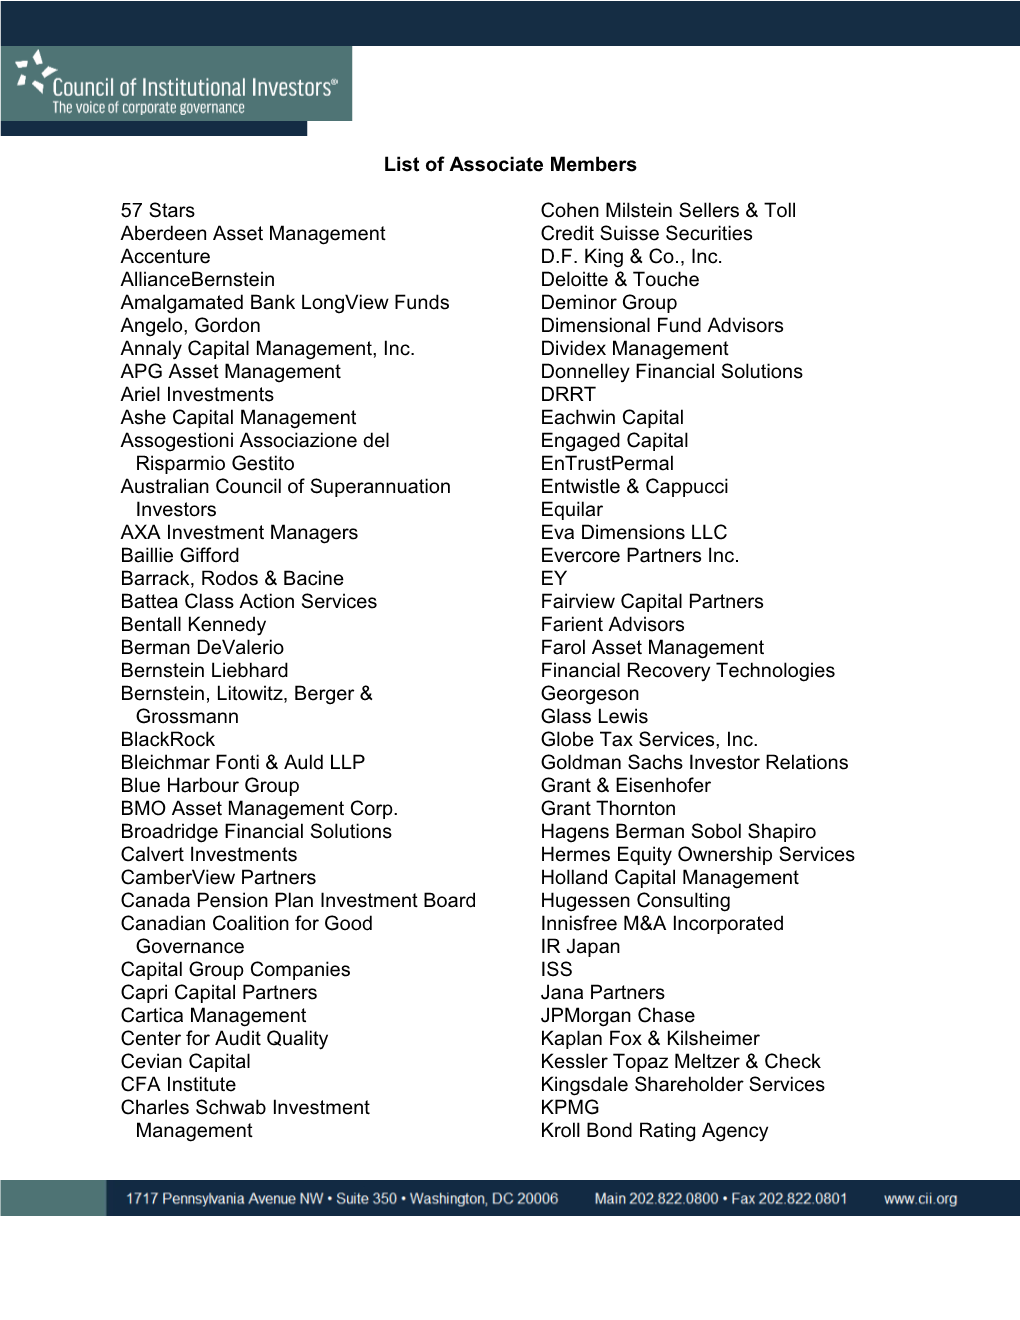 List of Associate Members 57 Stars Aberdeen Asset Management